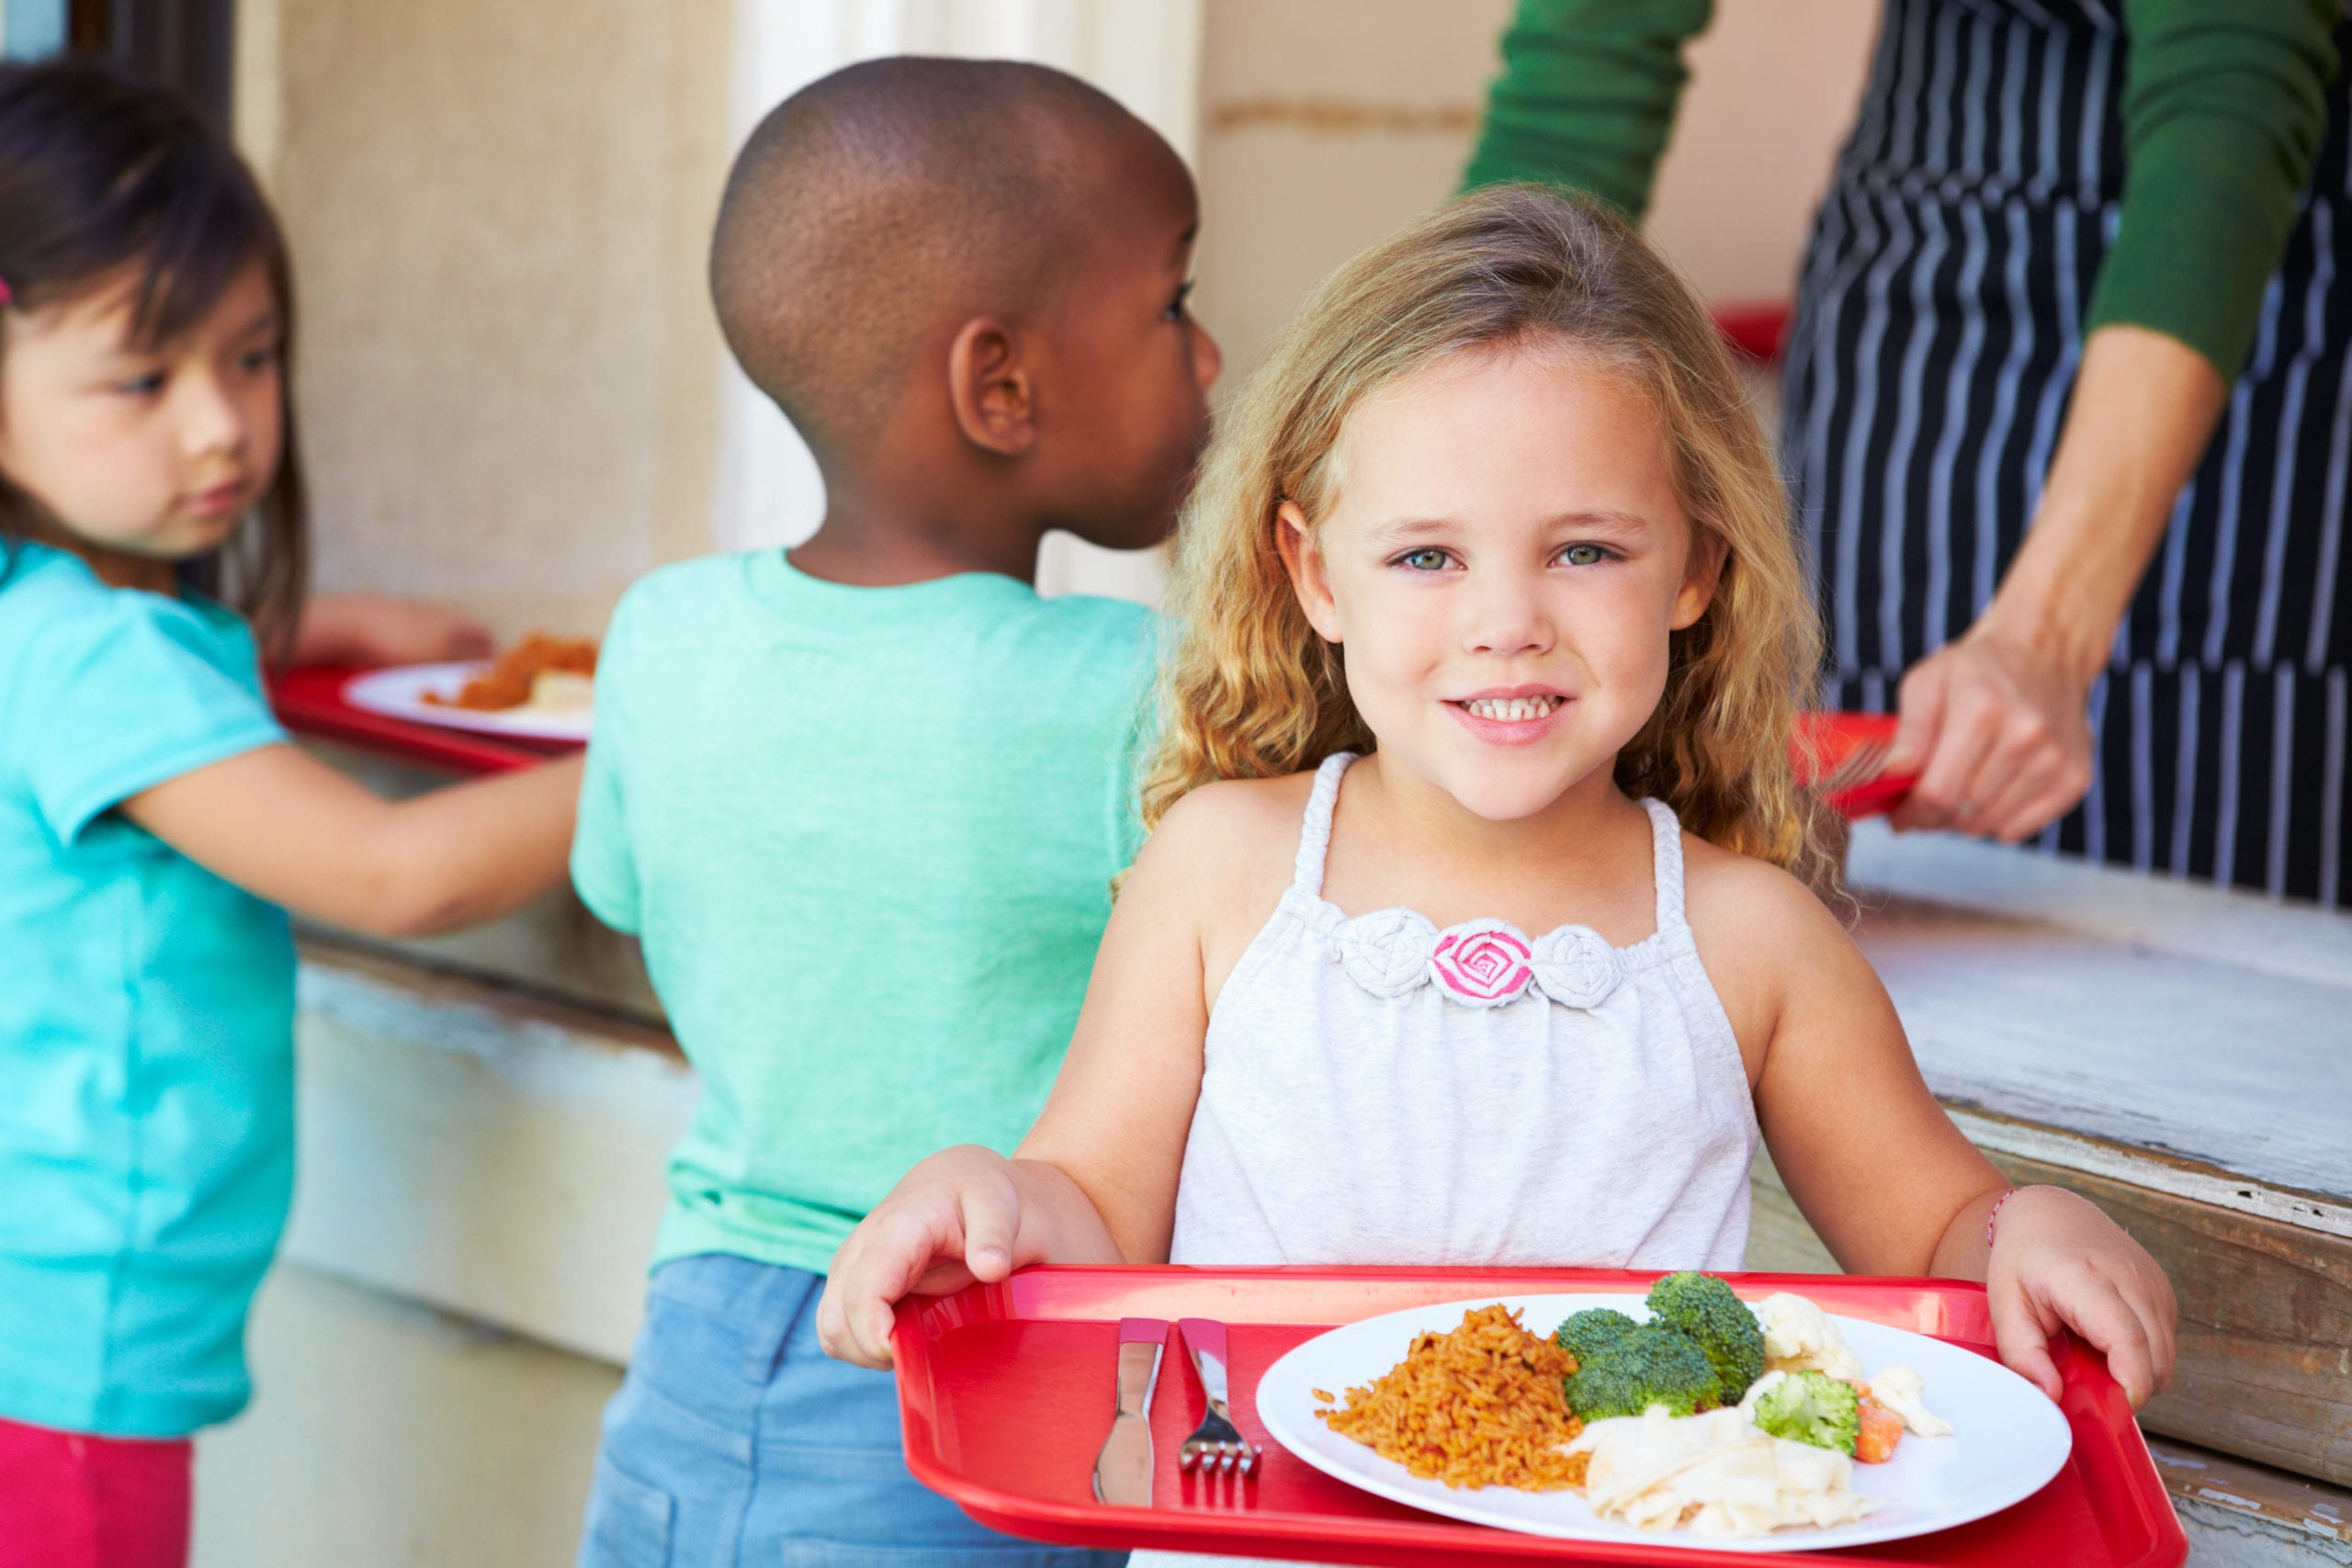 Включи рядом ребенок. Самостоятельный ребенок. Питание в детском саду. Дети несут еду. Бесплатным питанием детей.